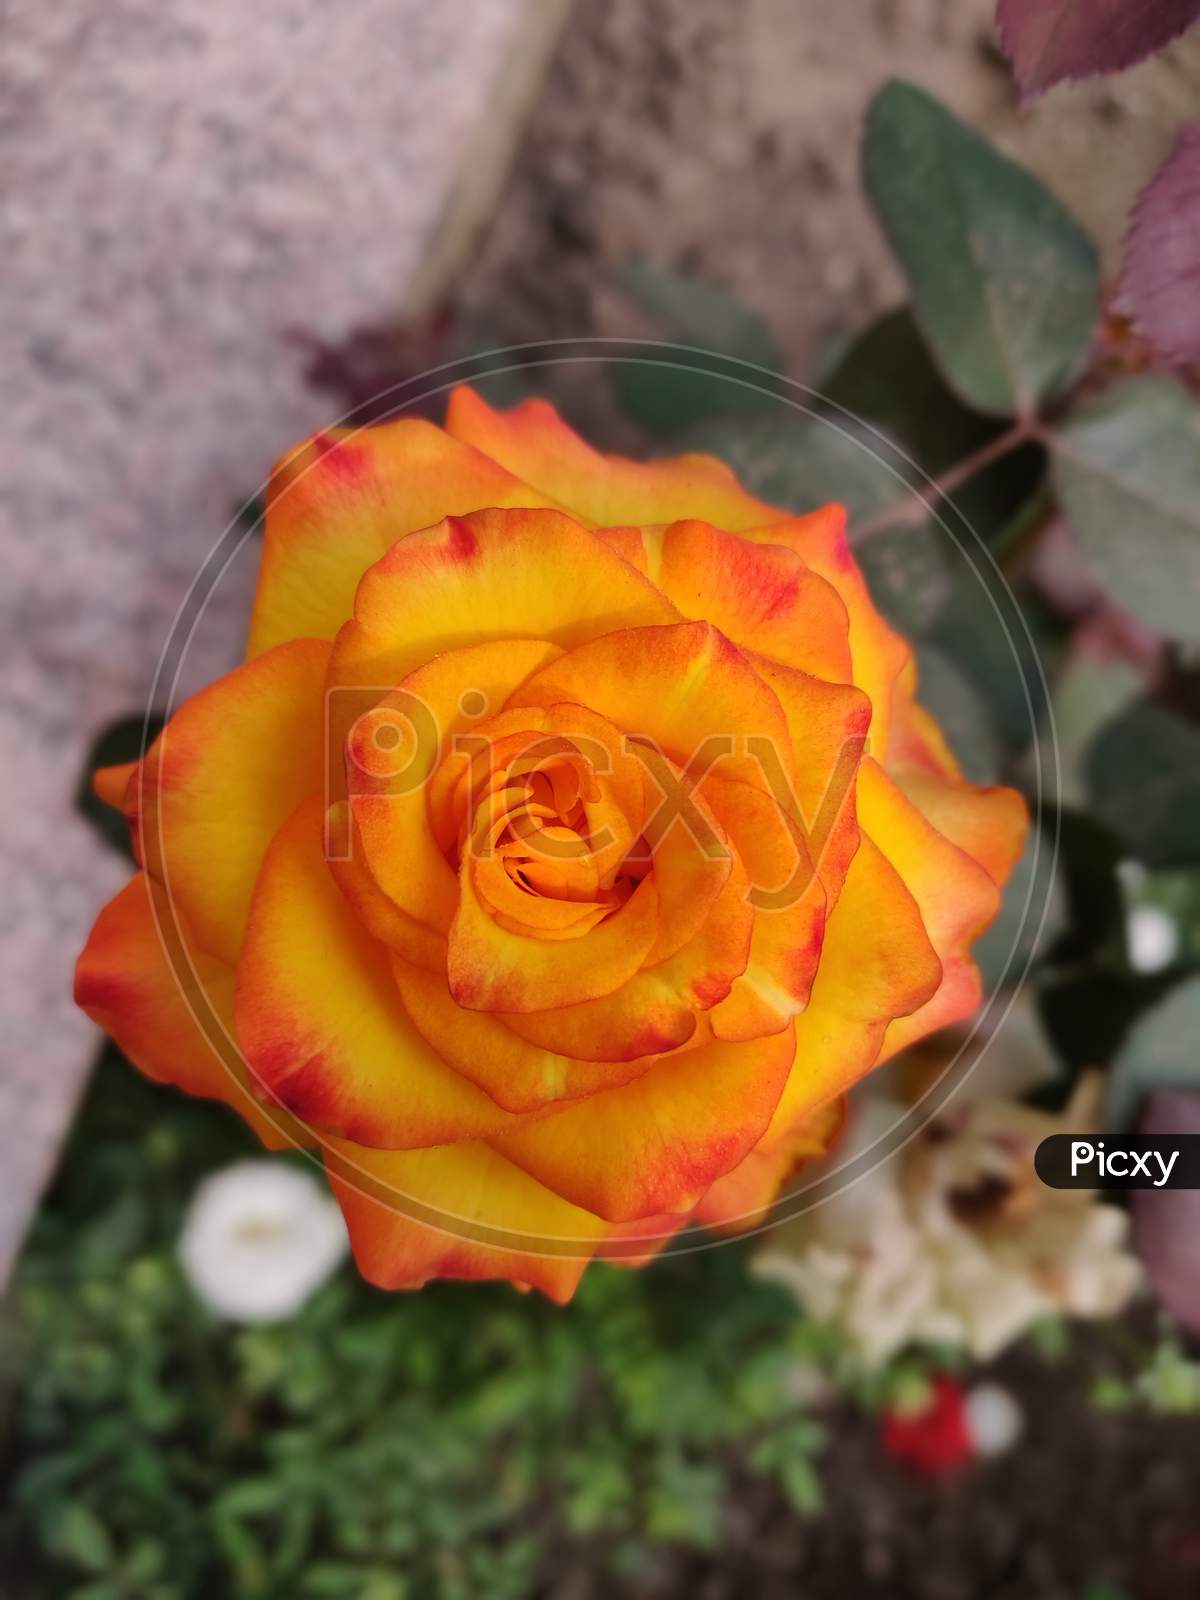 #Rose #Orange Rose #Garden Rose